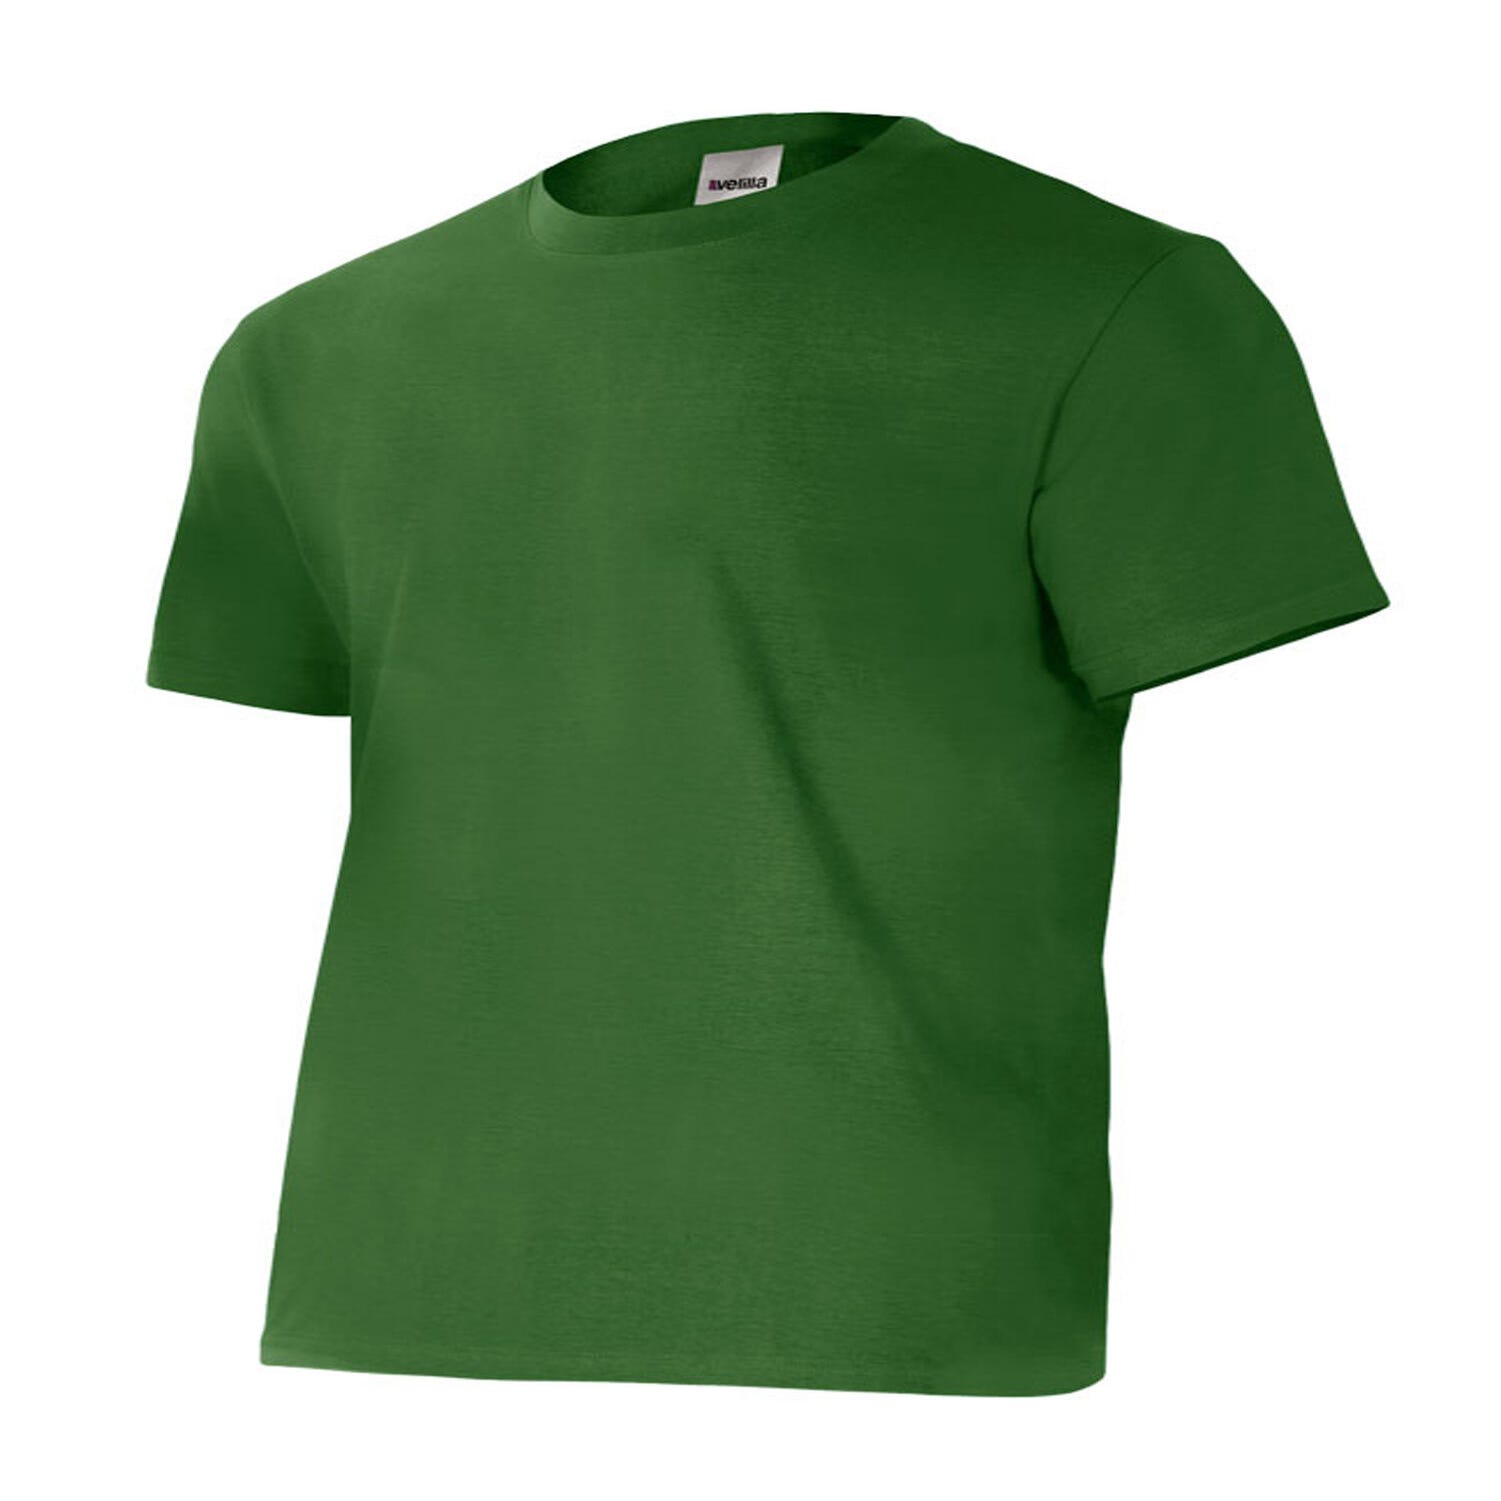  Camiseta Verde